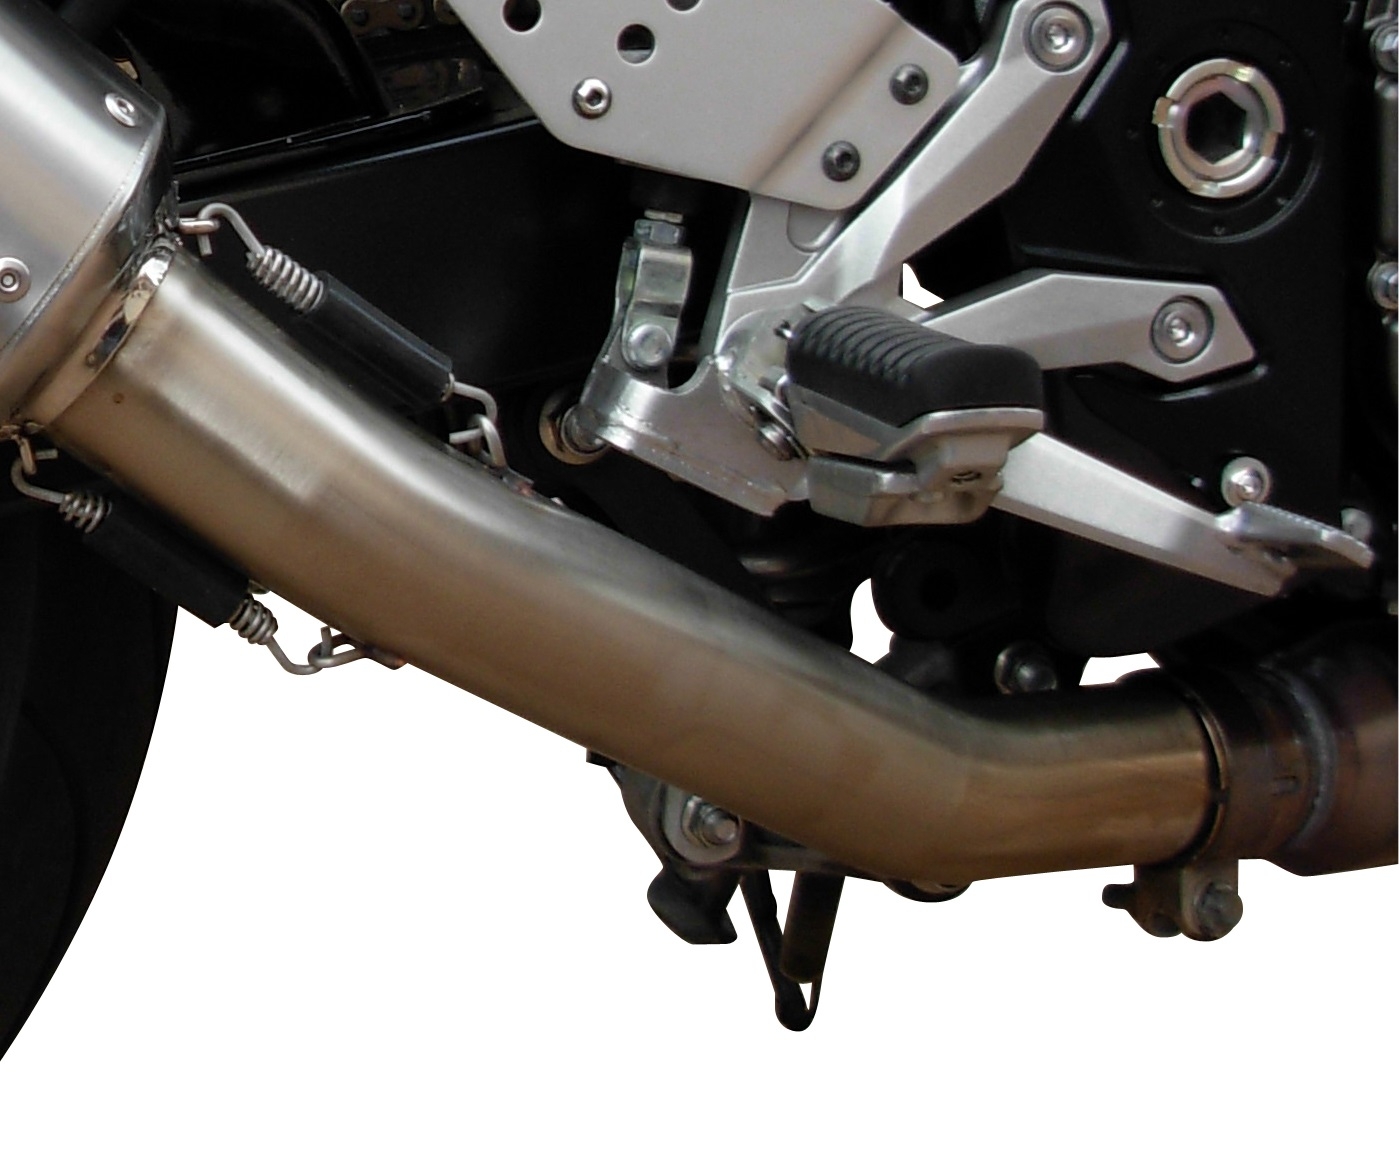 Scarico compatibile con Kawasaki Z 750 - R 2007-2014, Satinox , Terminale di scarico omologato, fornito con db killer estraibile, catalizzatore e raccordo specifico